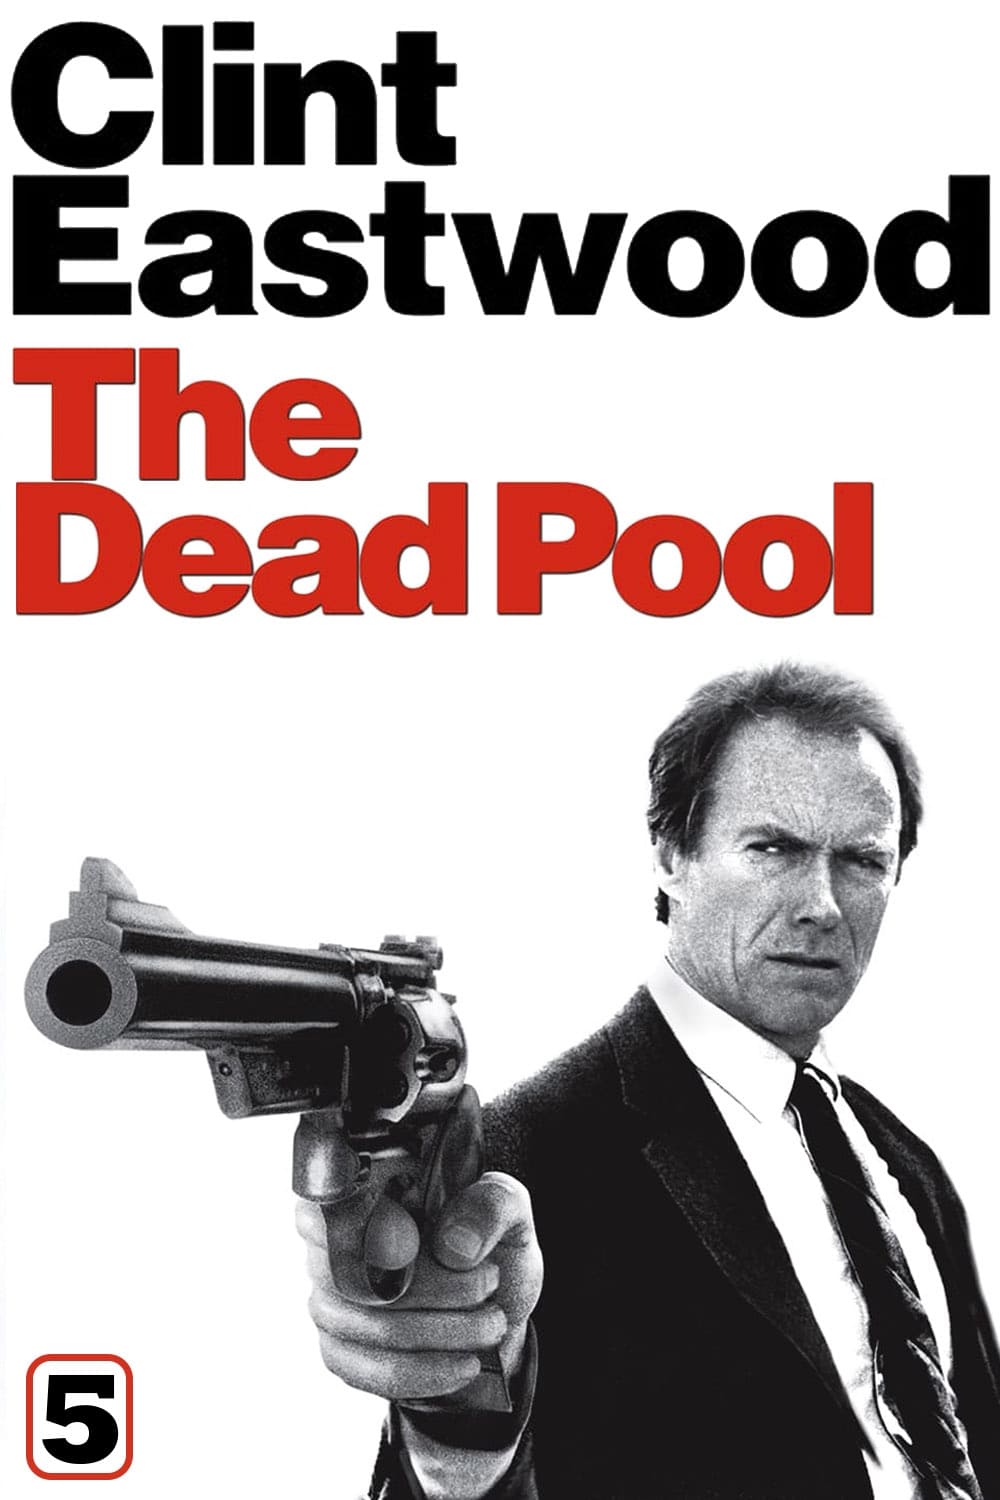 دانلود صوت دوبله فیلم The Dead Pool 1988